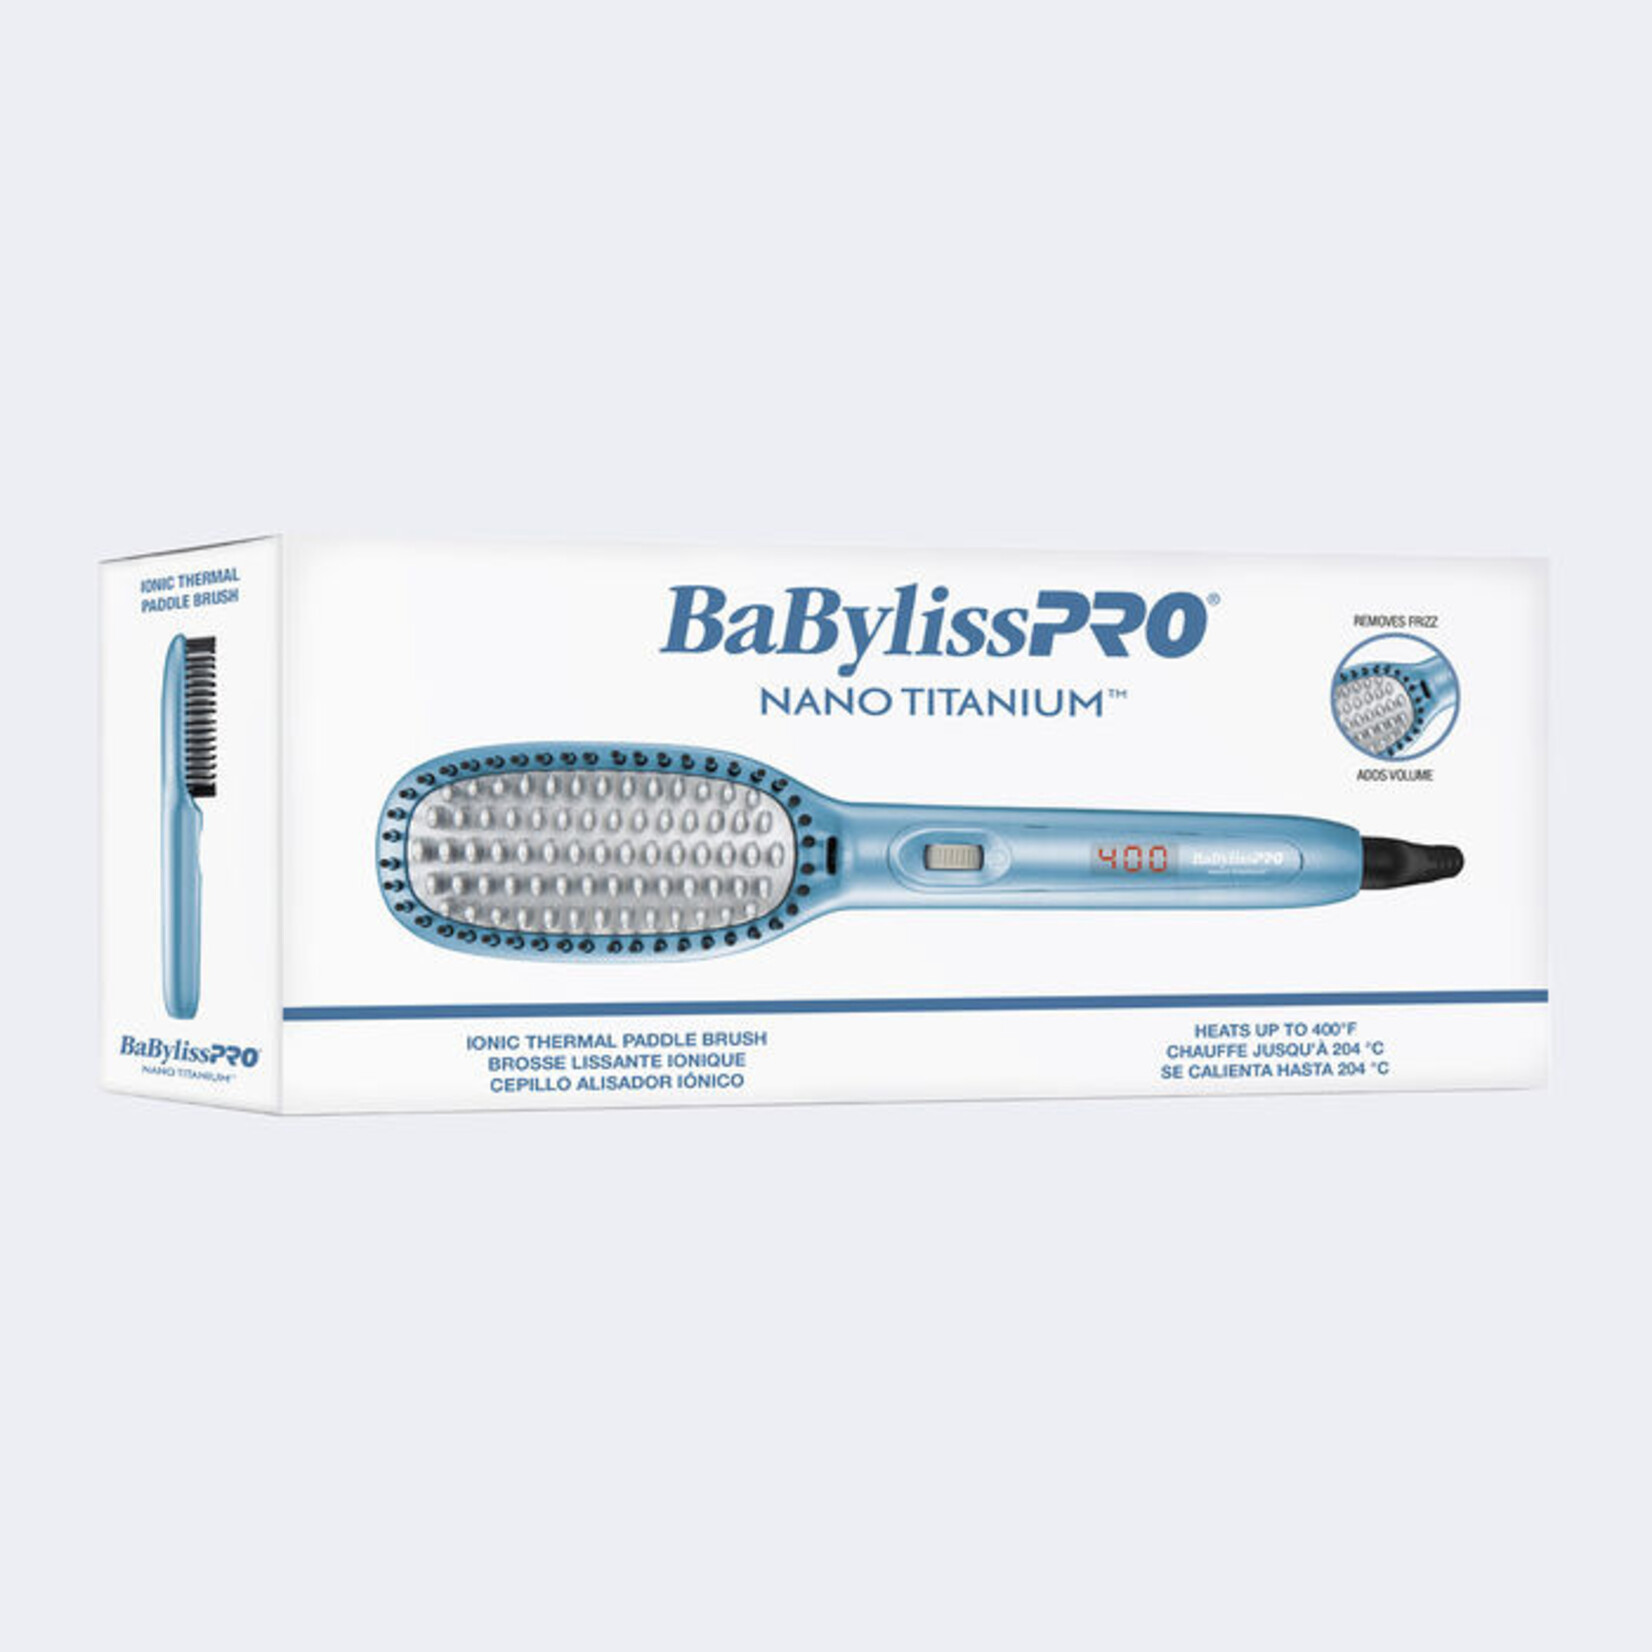 Babyliss Pro BabylissPro - Nano titanium - Ionic thermal paddle brush